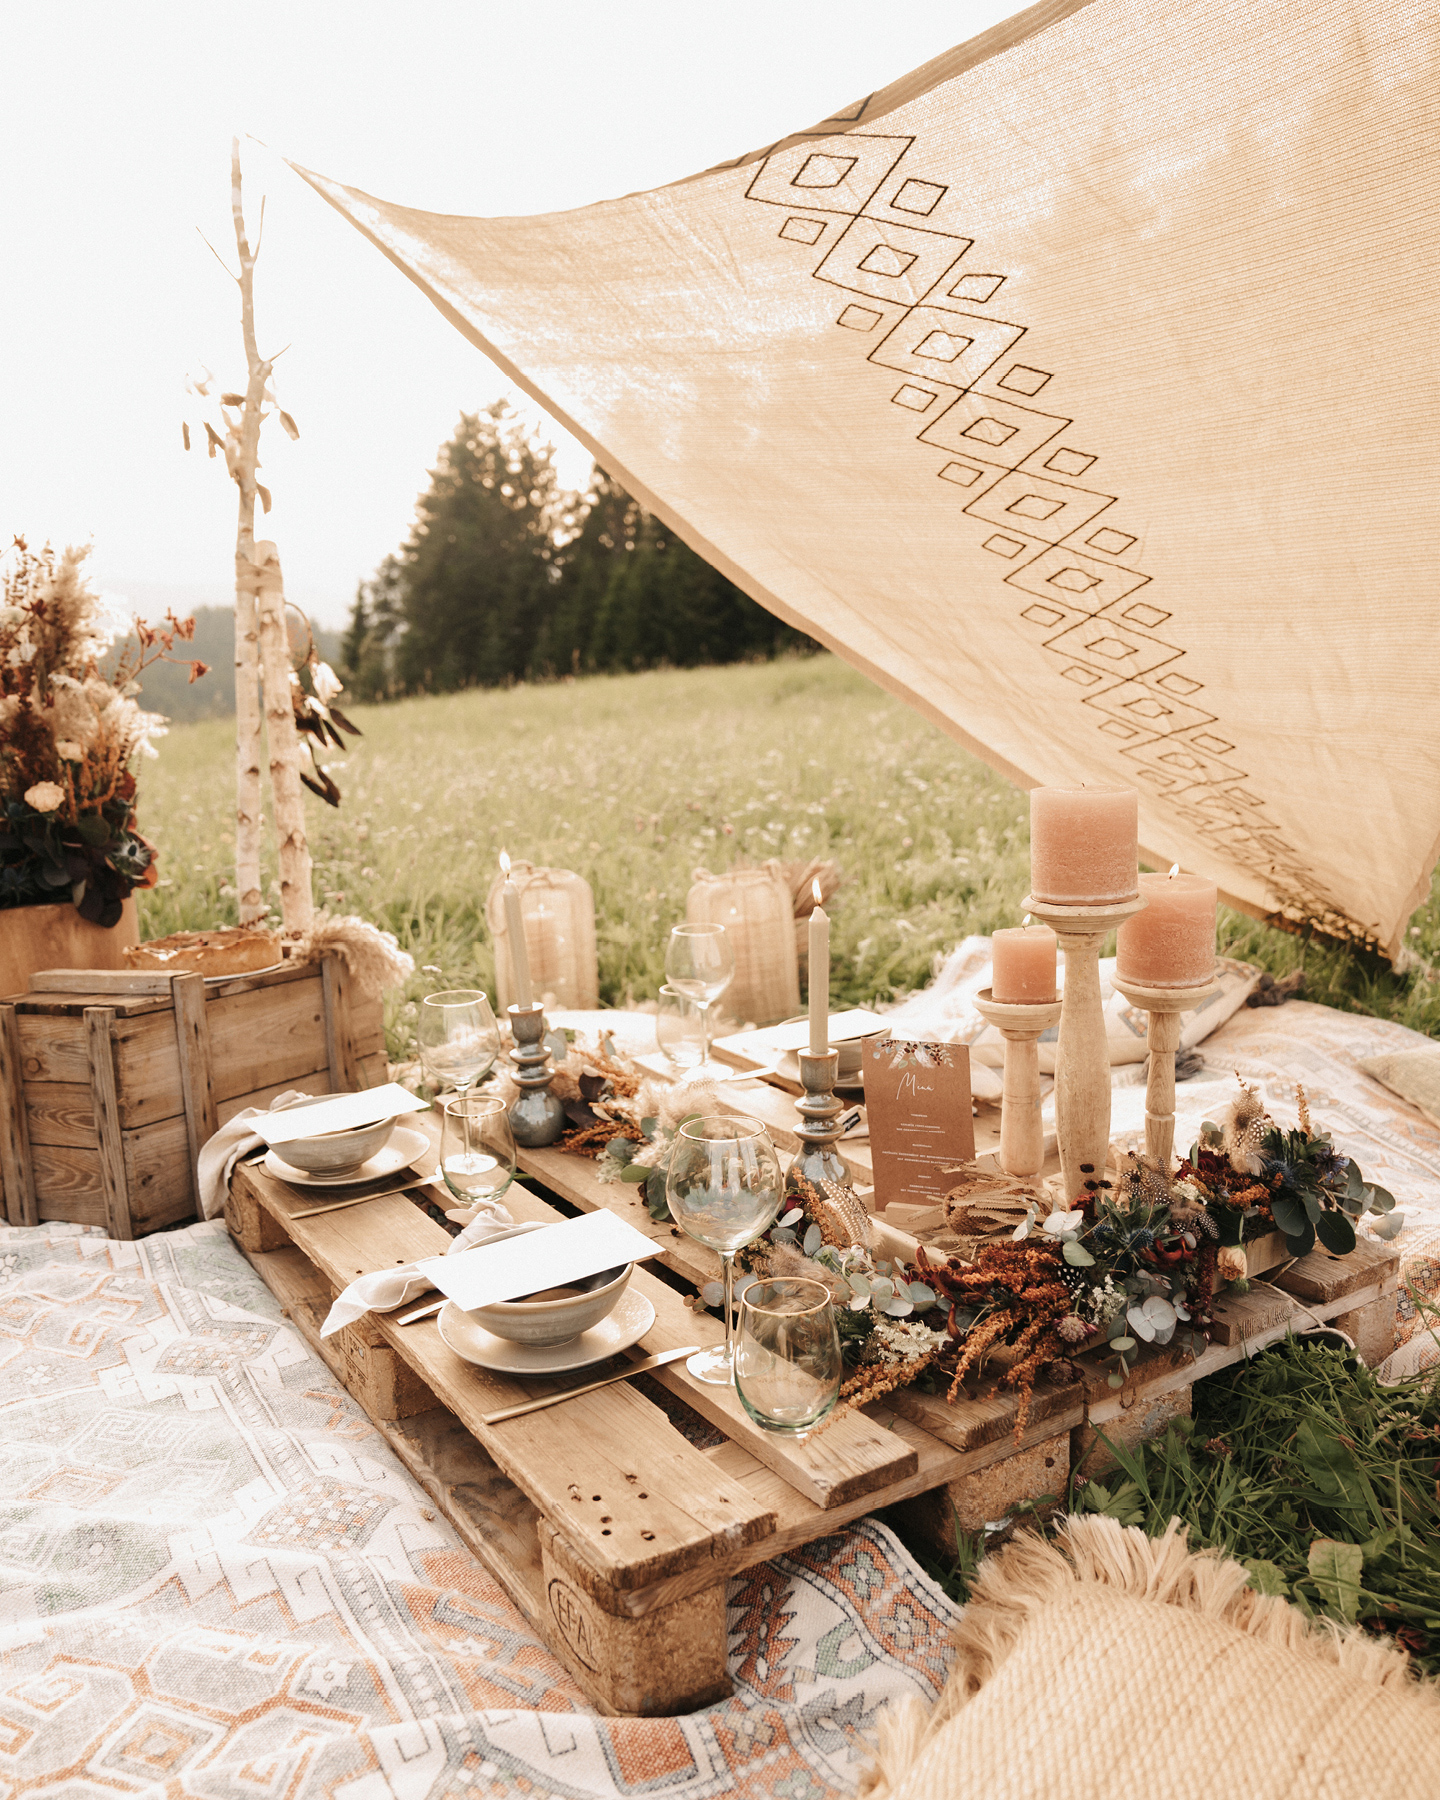 Holzpalette auf einer Wiese ist dekoriert mit Boho-Blumen, Kerzen und Menükarten zum Boho Picknick.